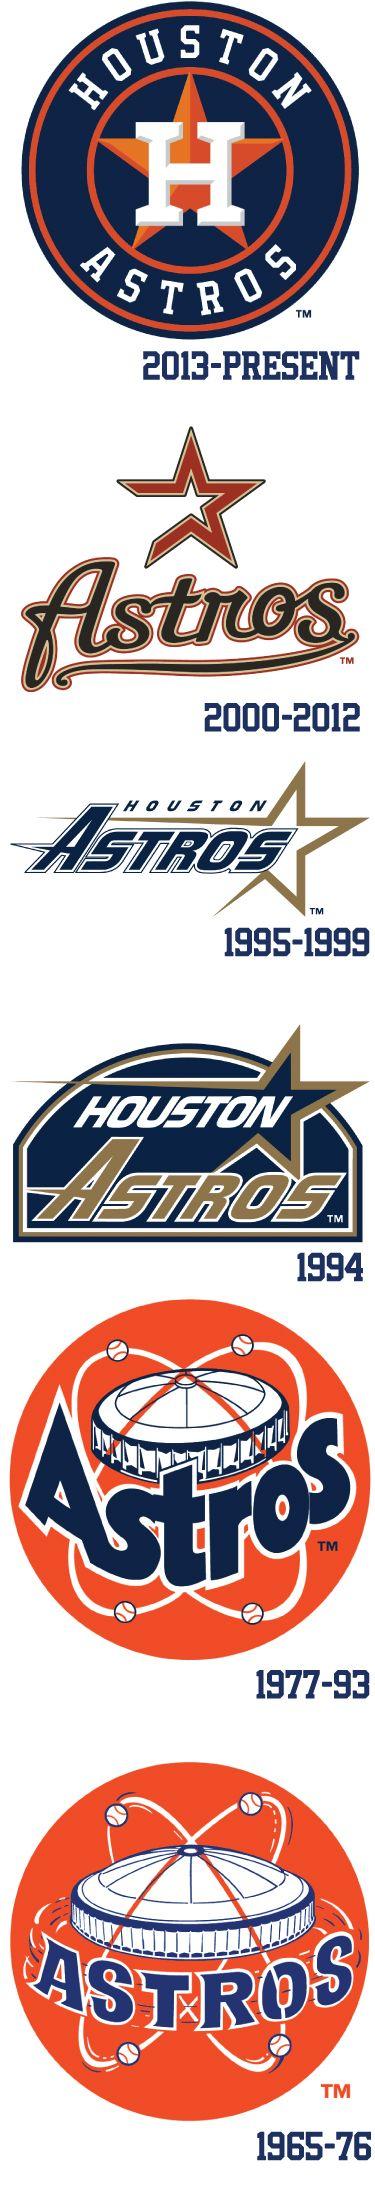 Houston Astros Logo - Astros Logo History | Houston Astros